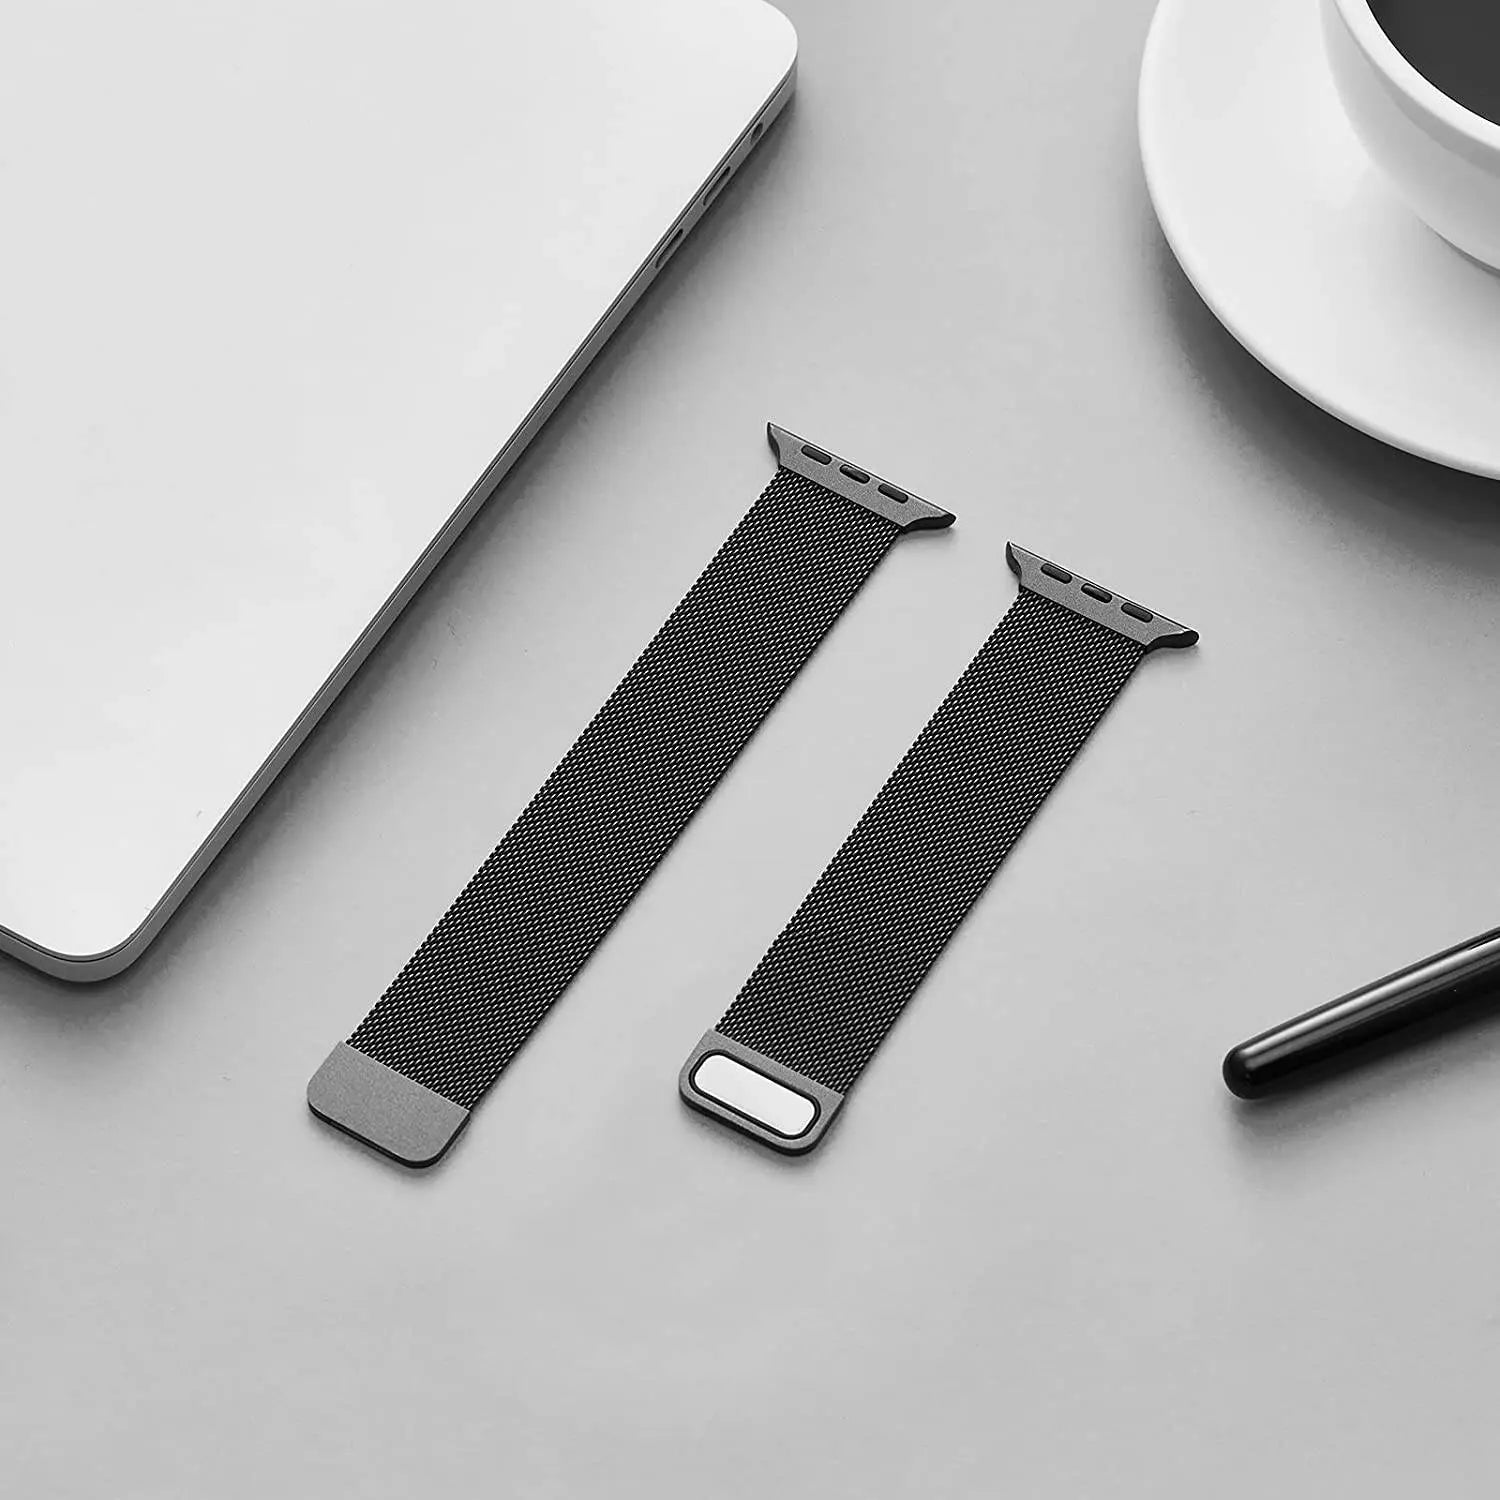 Premium Steel Mesh Loop Band For Apple Watch Series 7 - Pinnacle Luxuries